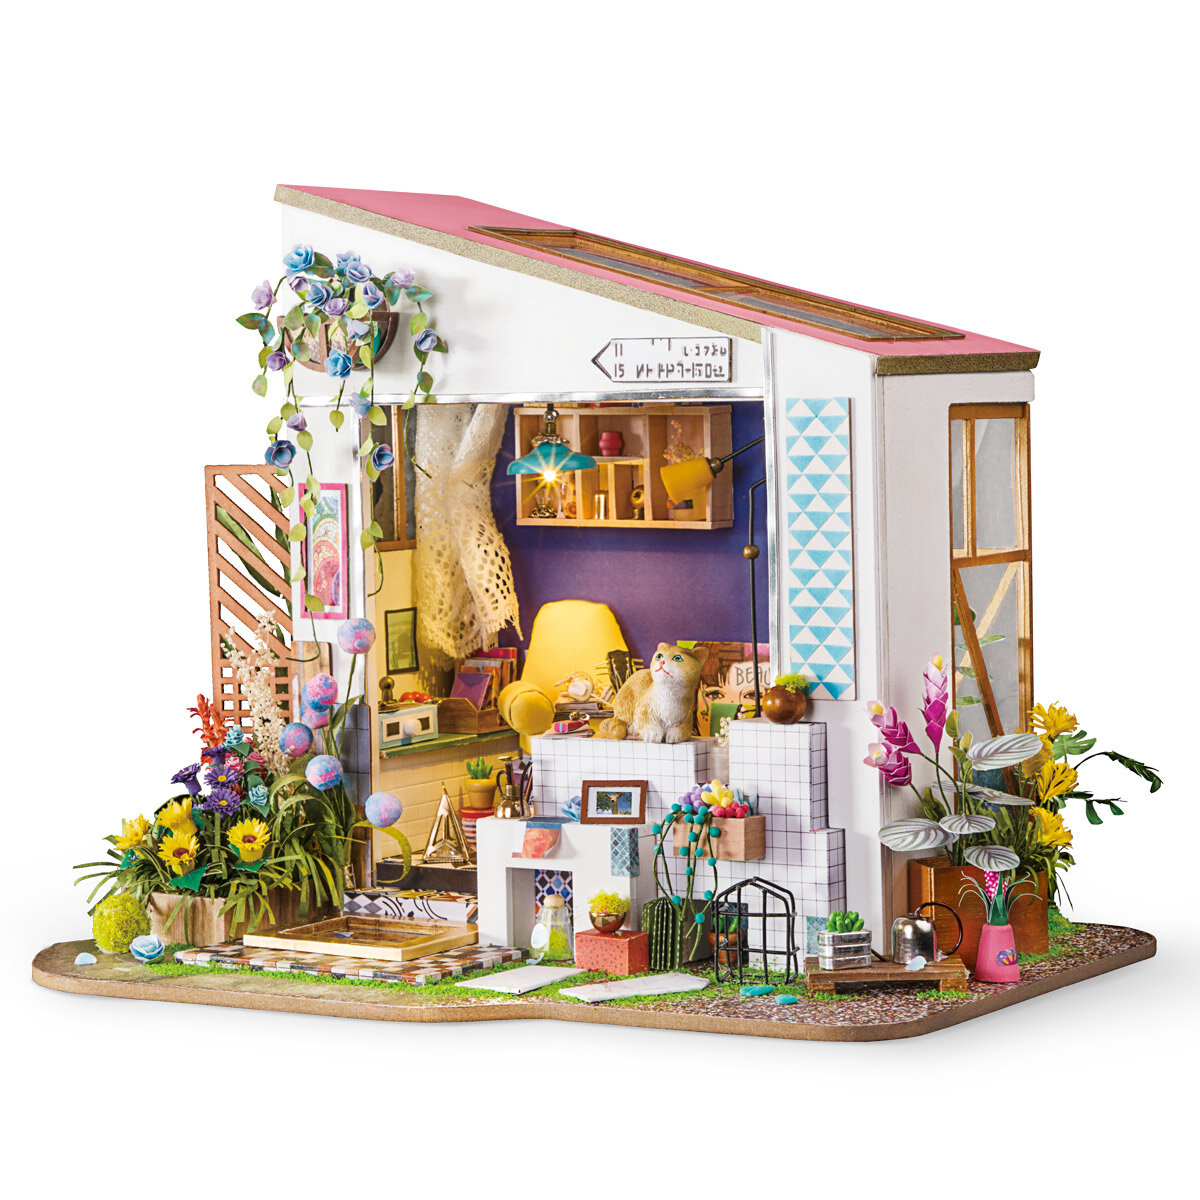 Miniature house - Lily's porch Rolife DG11